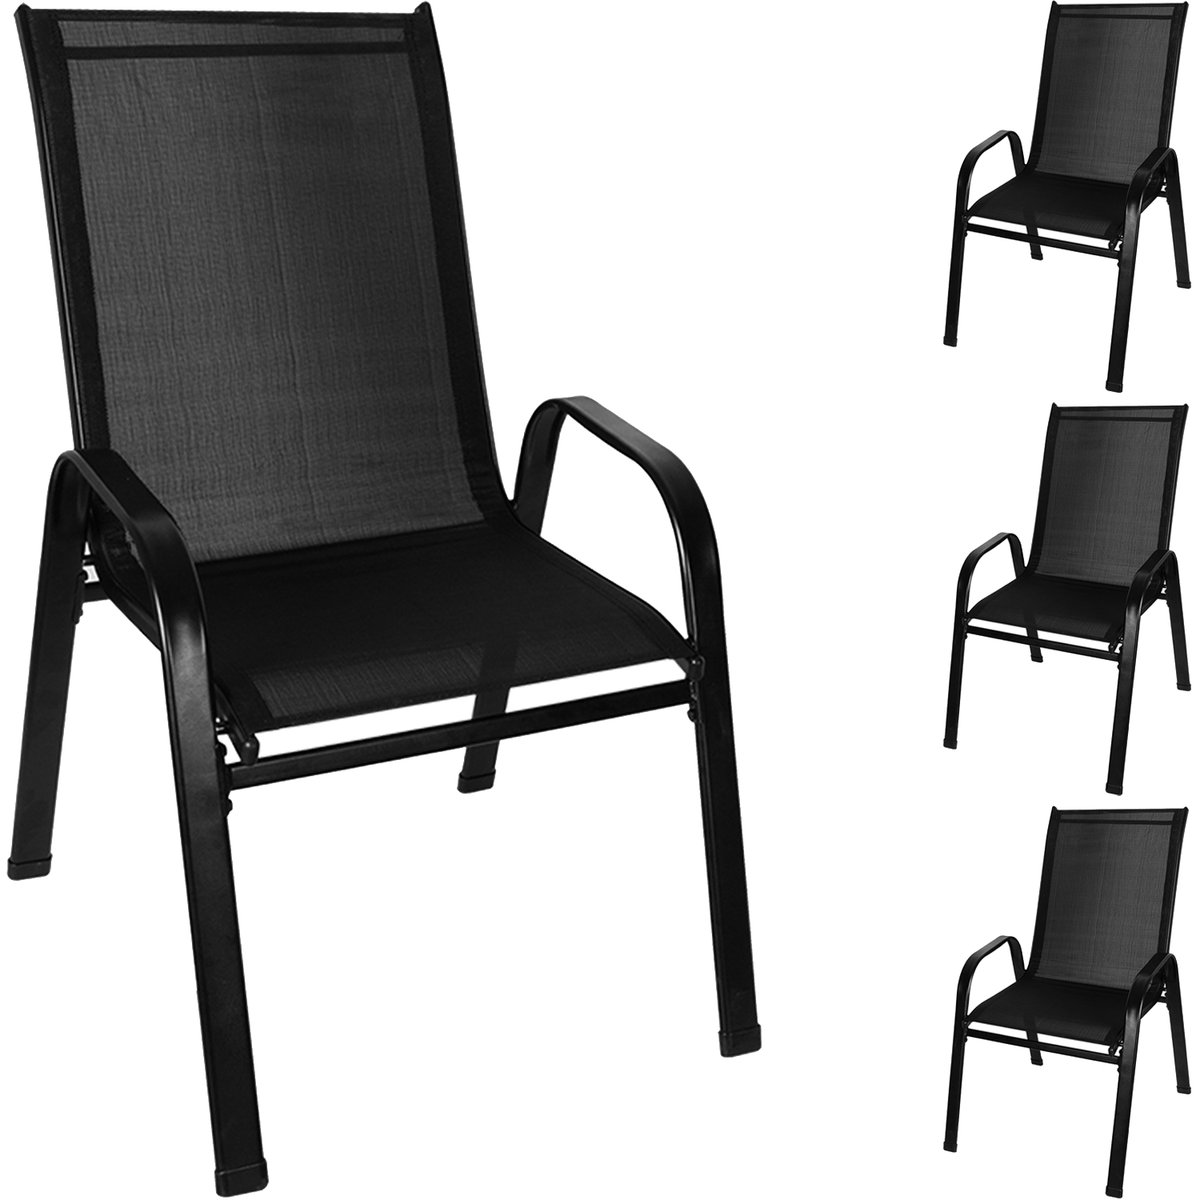 Zdjęcia - Meble ogrodowe Krzesło Ogrodowe na Taras Balkon Ogród Mocne Metalowe Krzesła Tarasowe 4sz